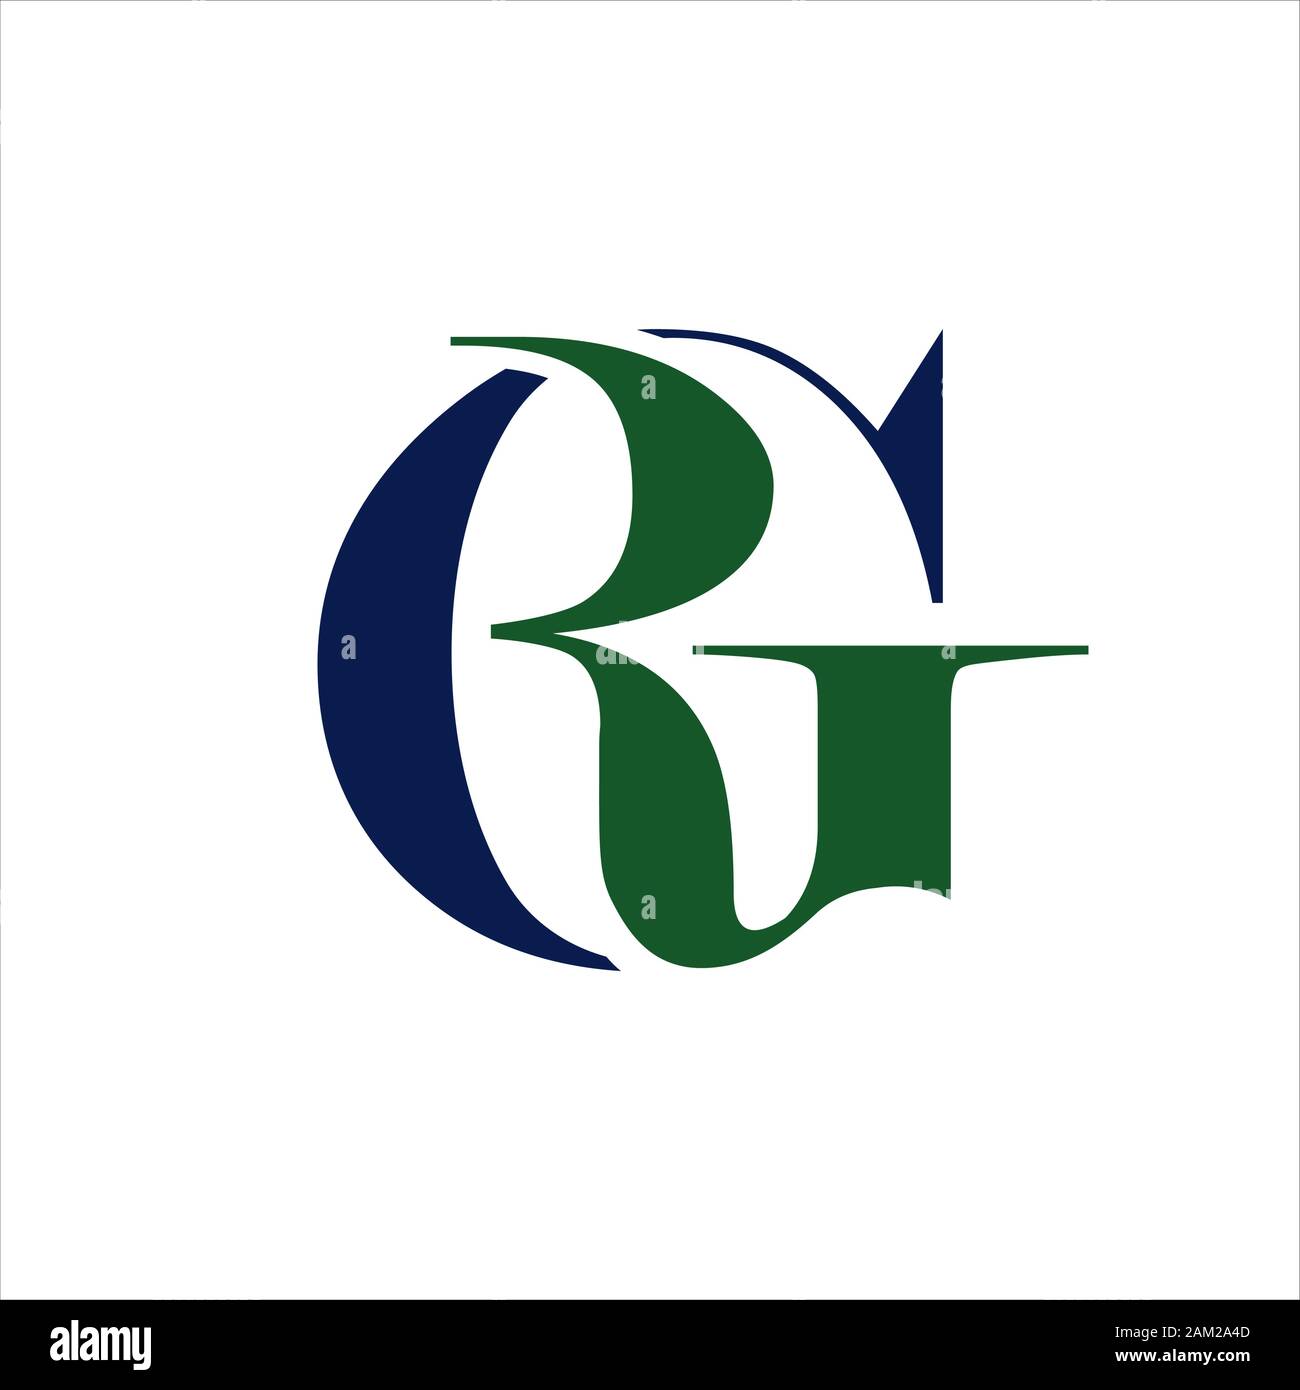 G R Letra Inicial De Elegante Diseño De Logotipo Overlaping Rg En